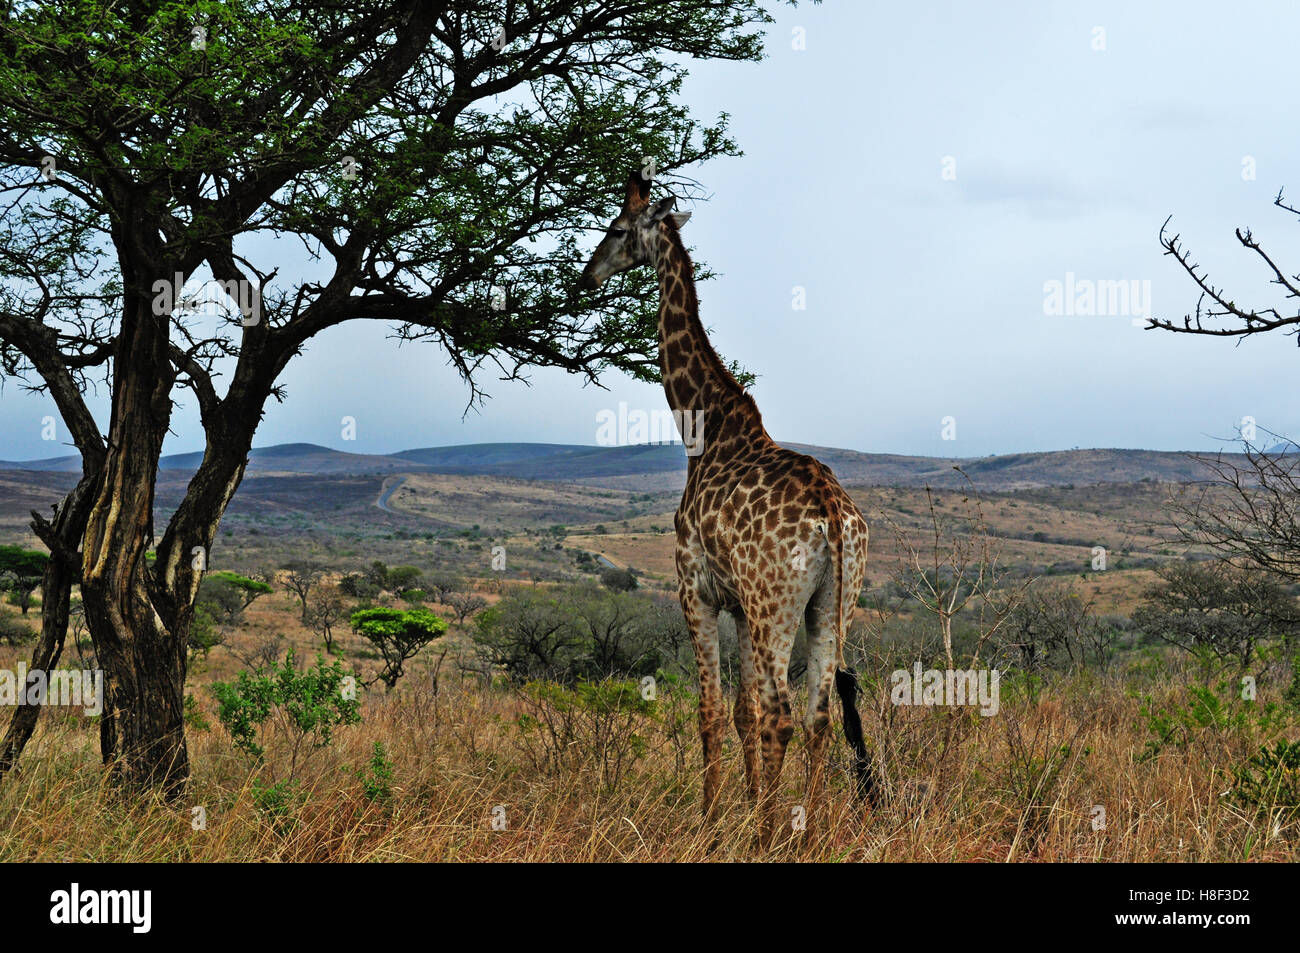 Safari in Südafrika: eine Giraffe füttern in Hluhluwe Imfolozi Game Reserve, das älteste Naturschutzgebiet in Afrika seit 1895 Stockfoto